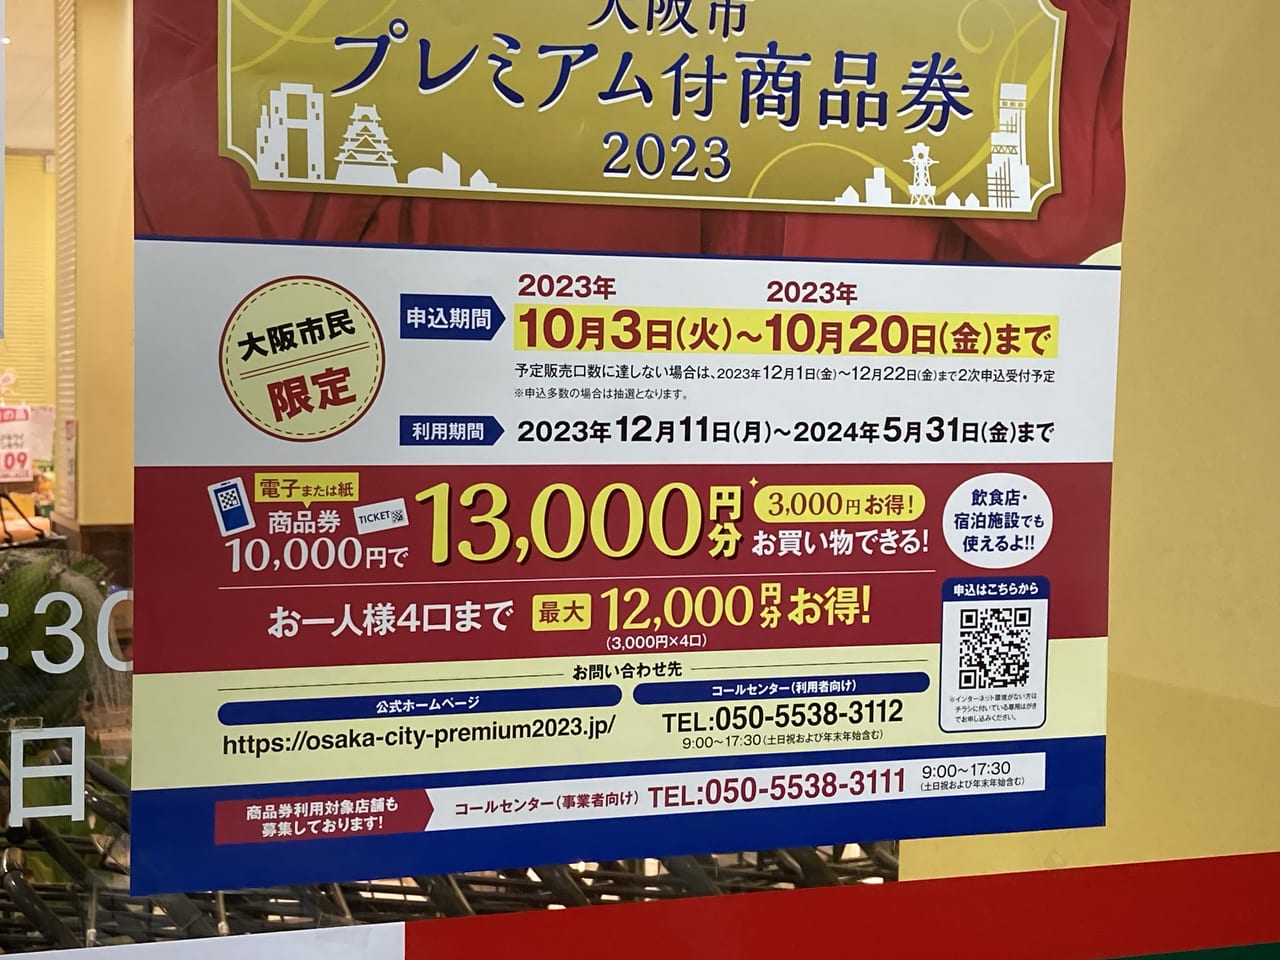 大阪市プレミアム付き商品券2023